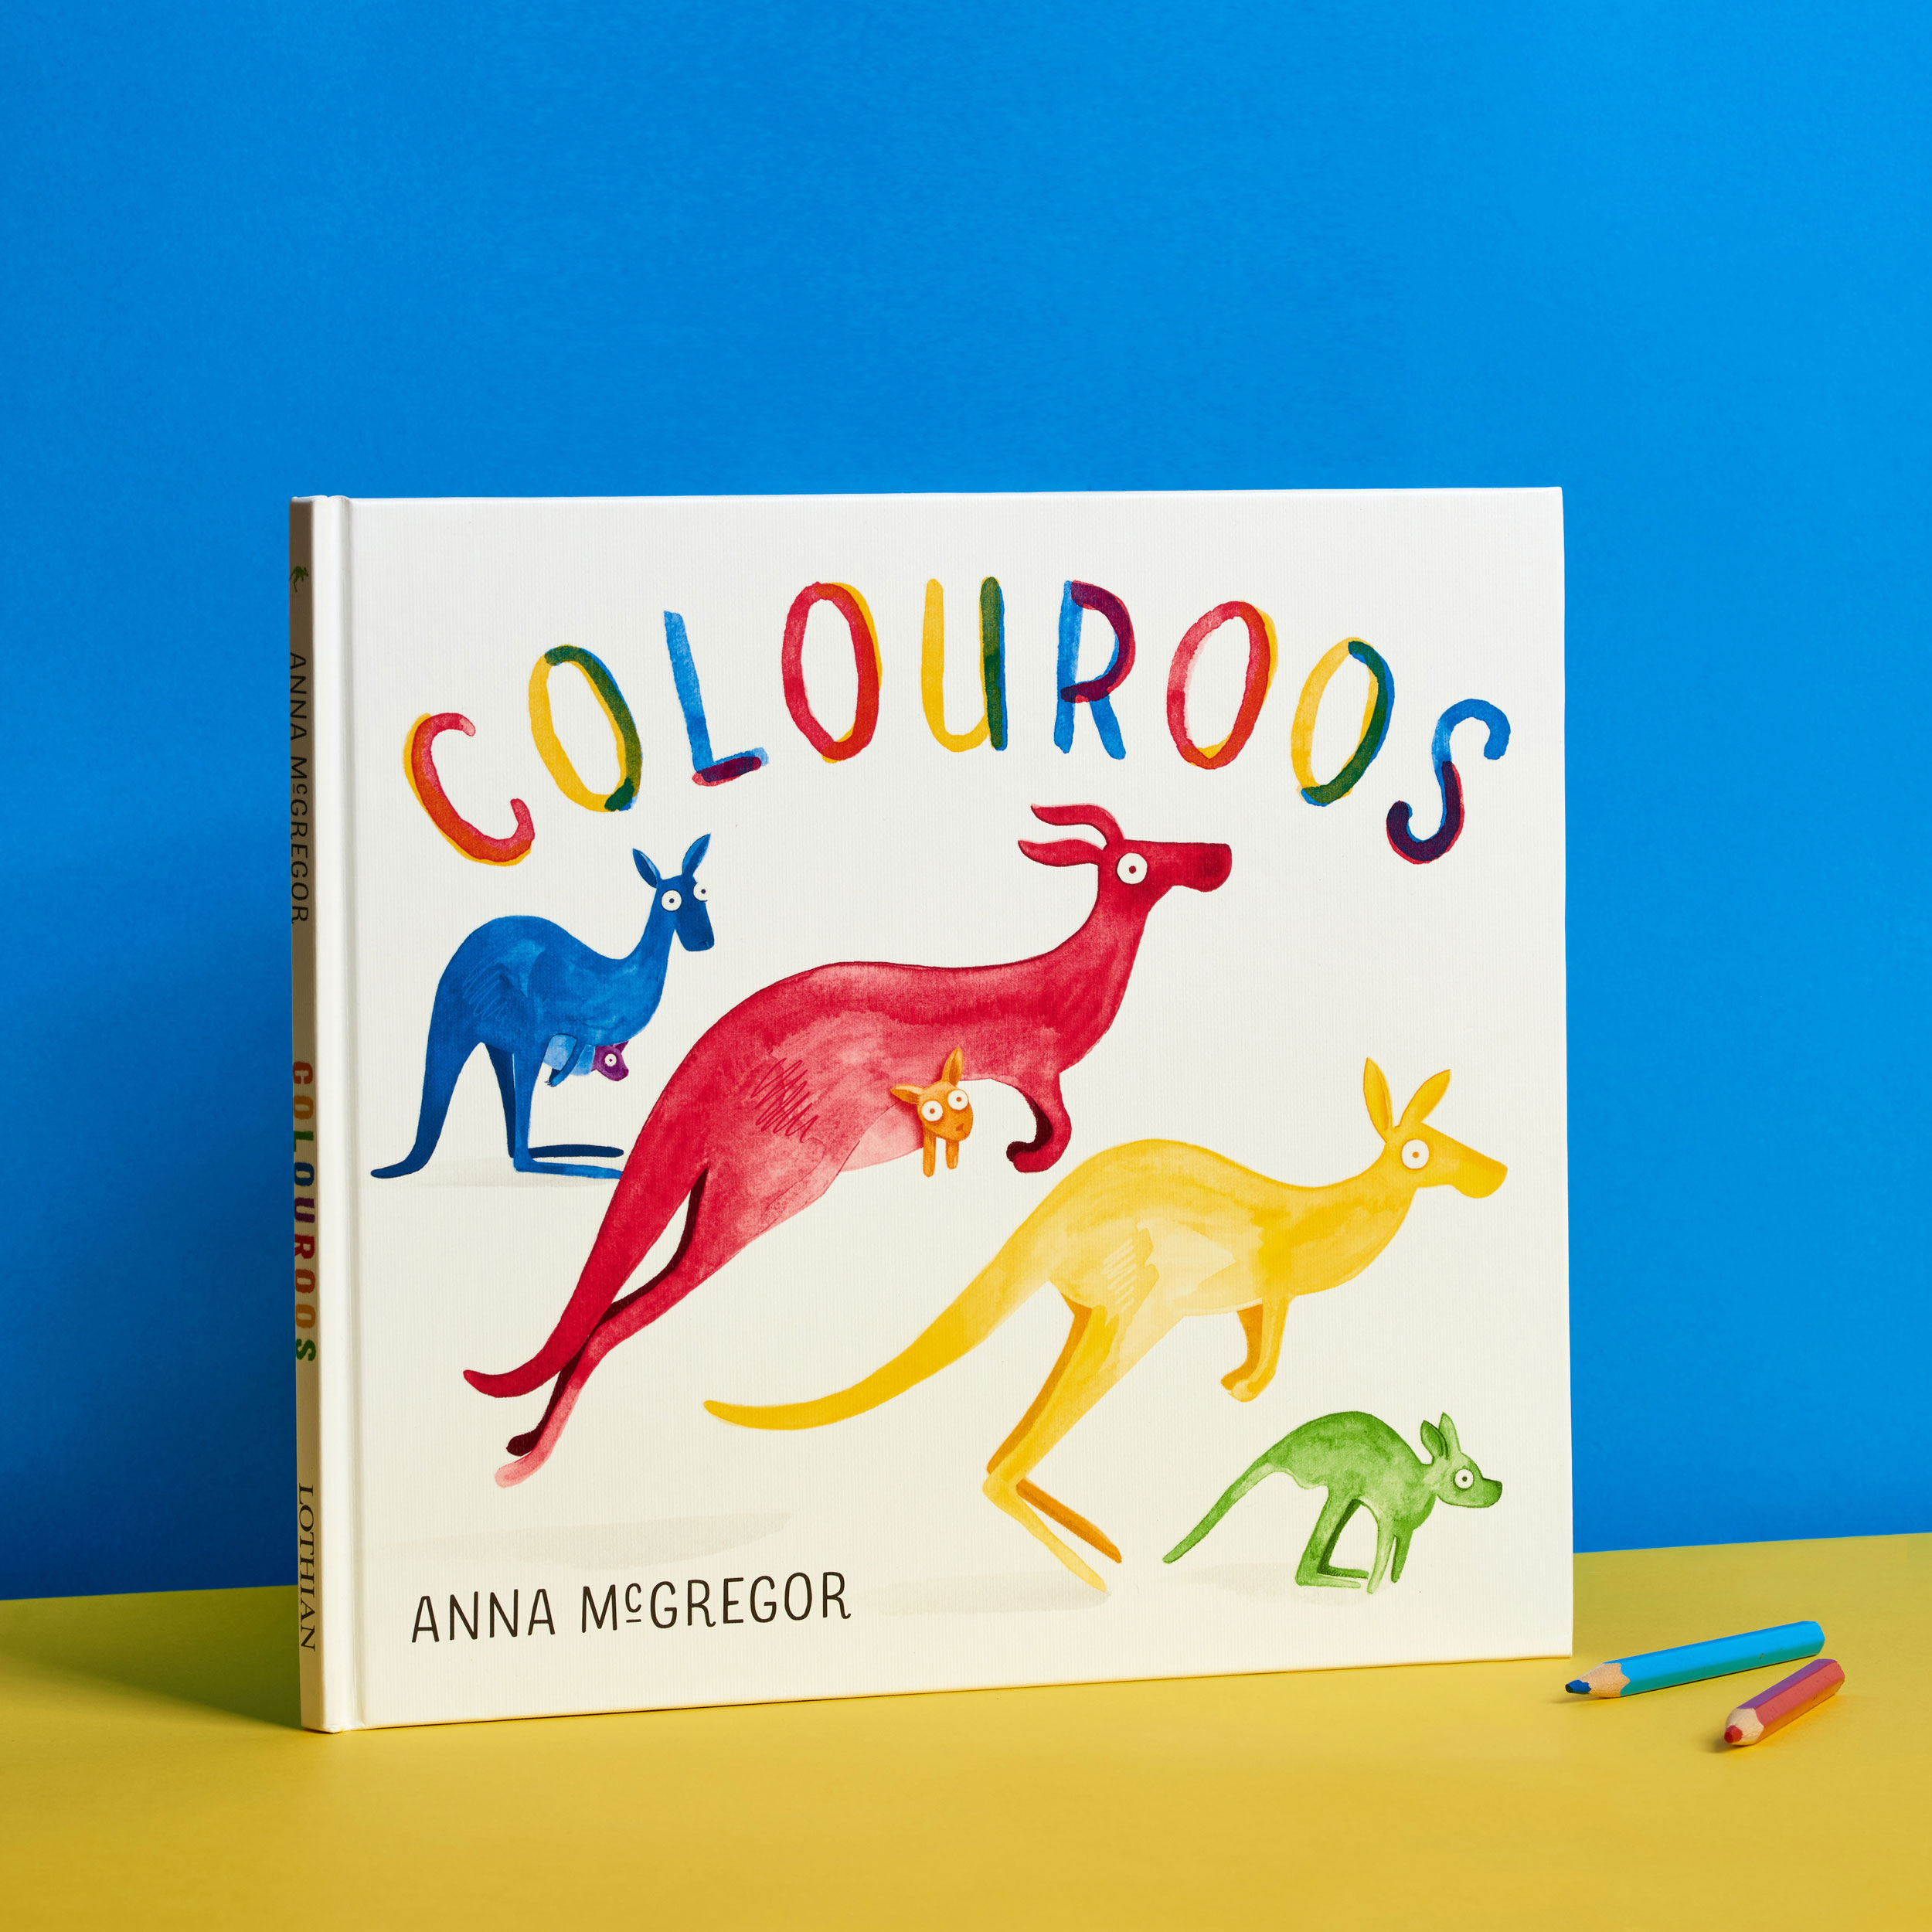 Colouroos Book Cover